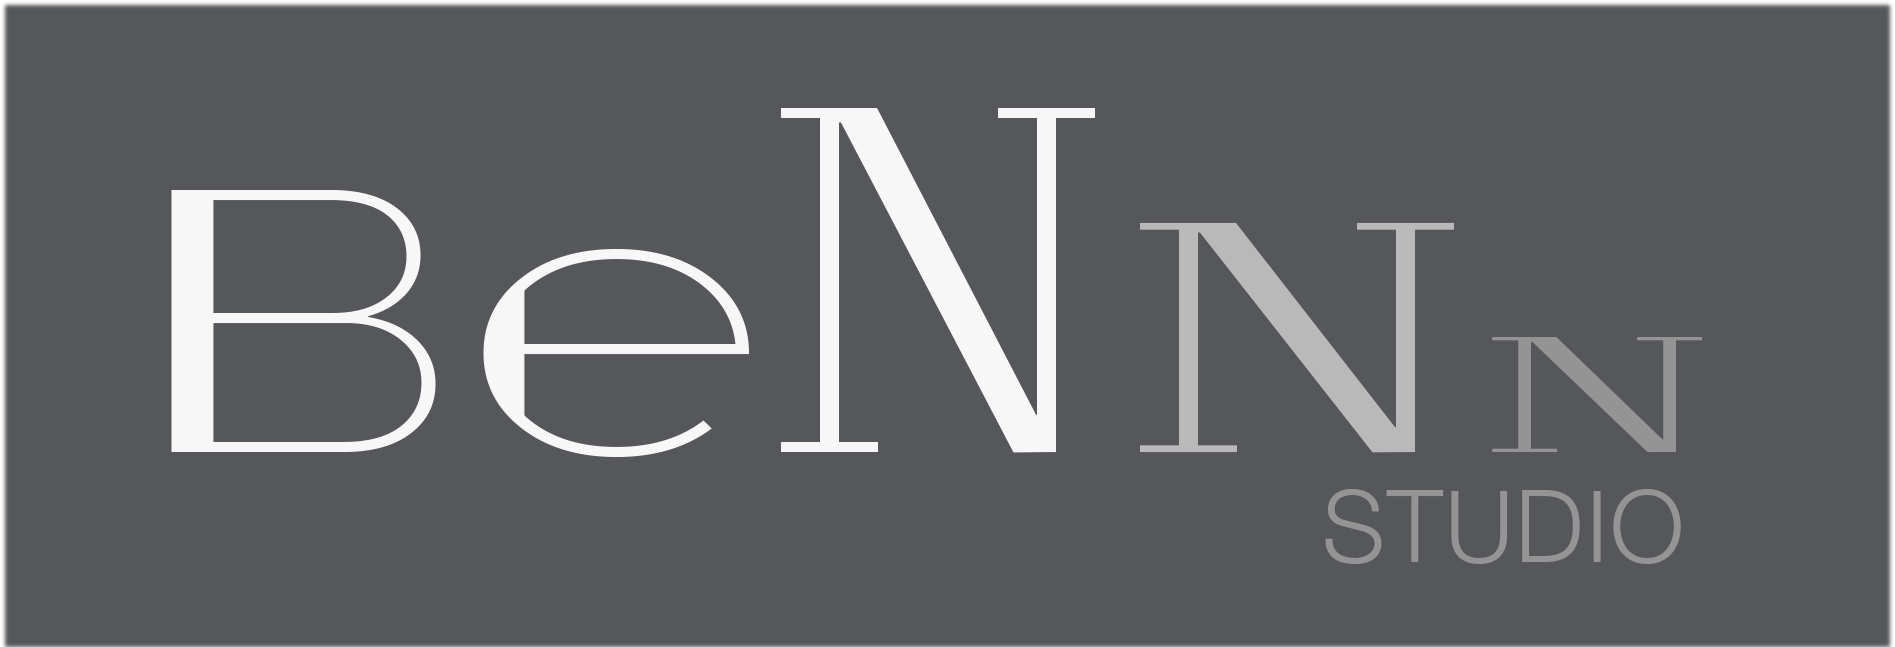 уникальный, разработанный логотип BeNNN-Studio